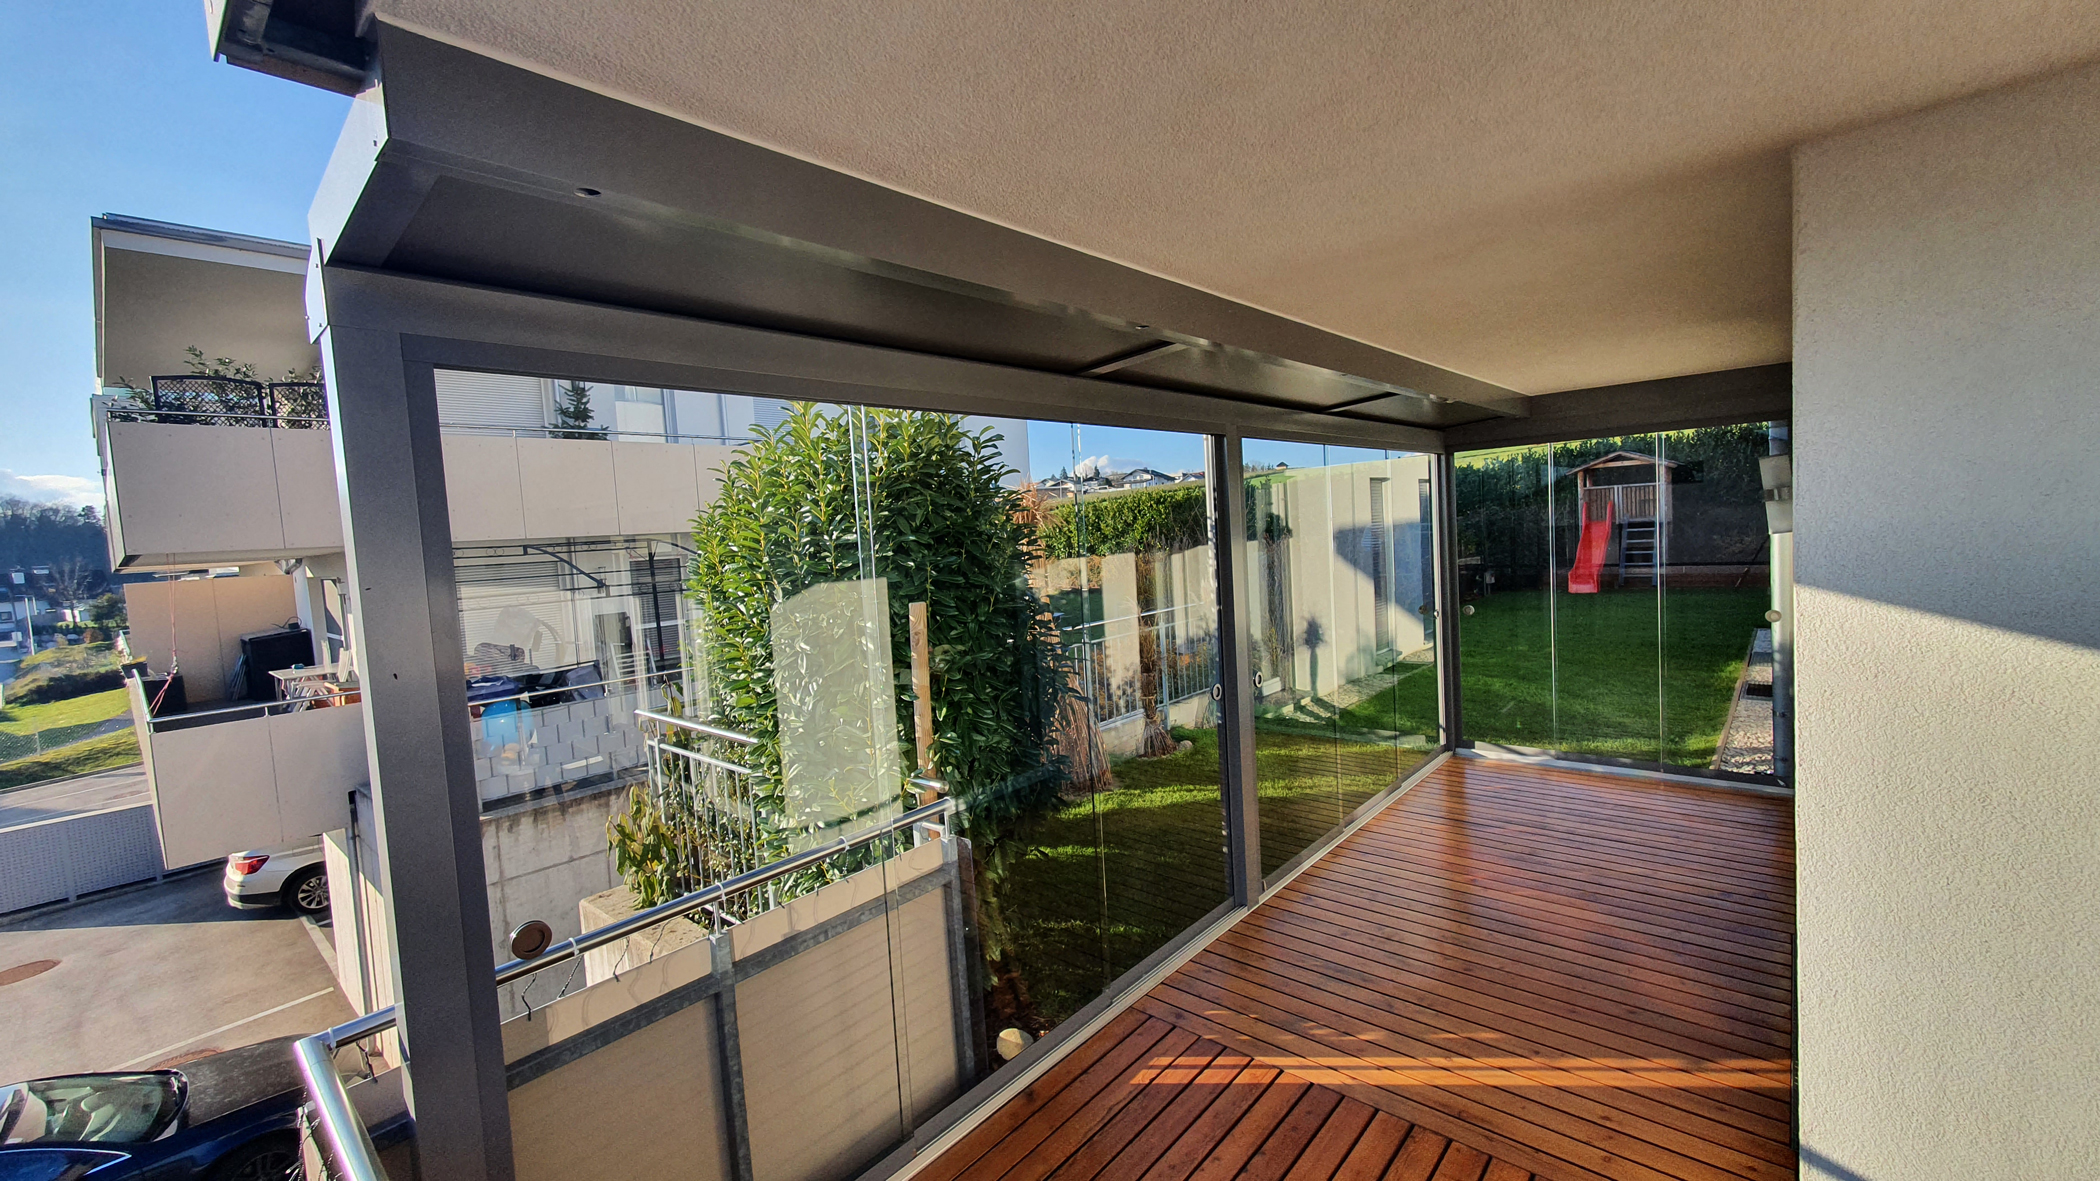 Terrassenverglasung mit einem kleinen Dach und 2 Seiten mit Schiebetüren geschlossen